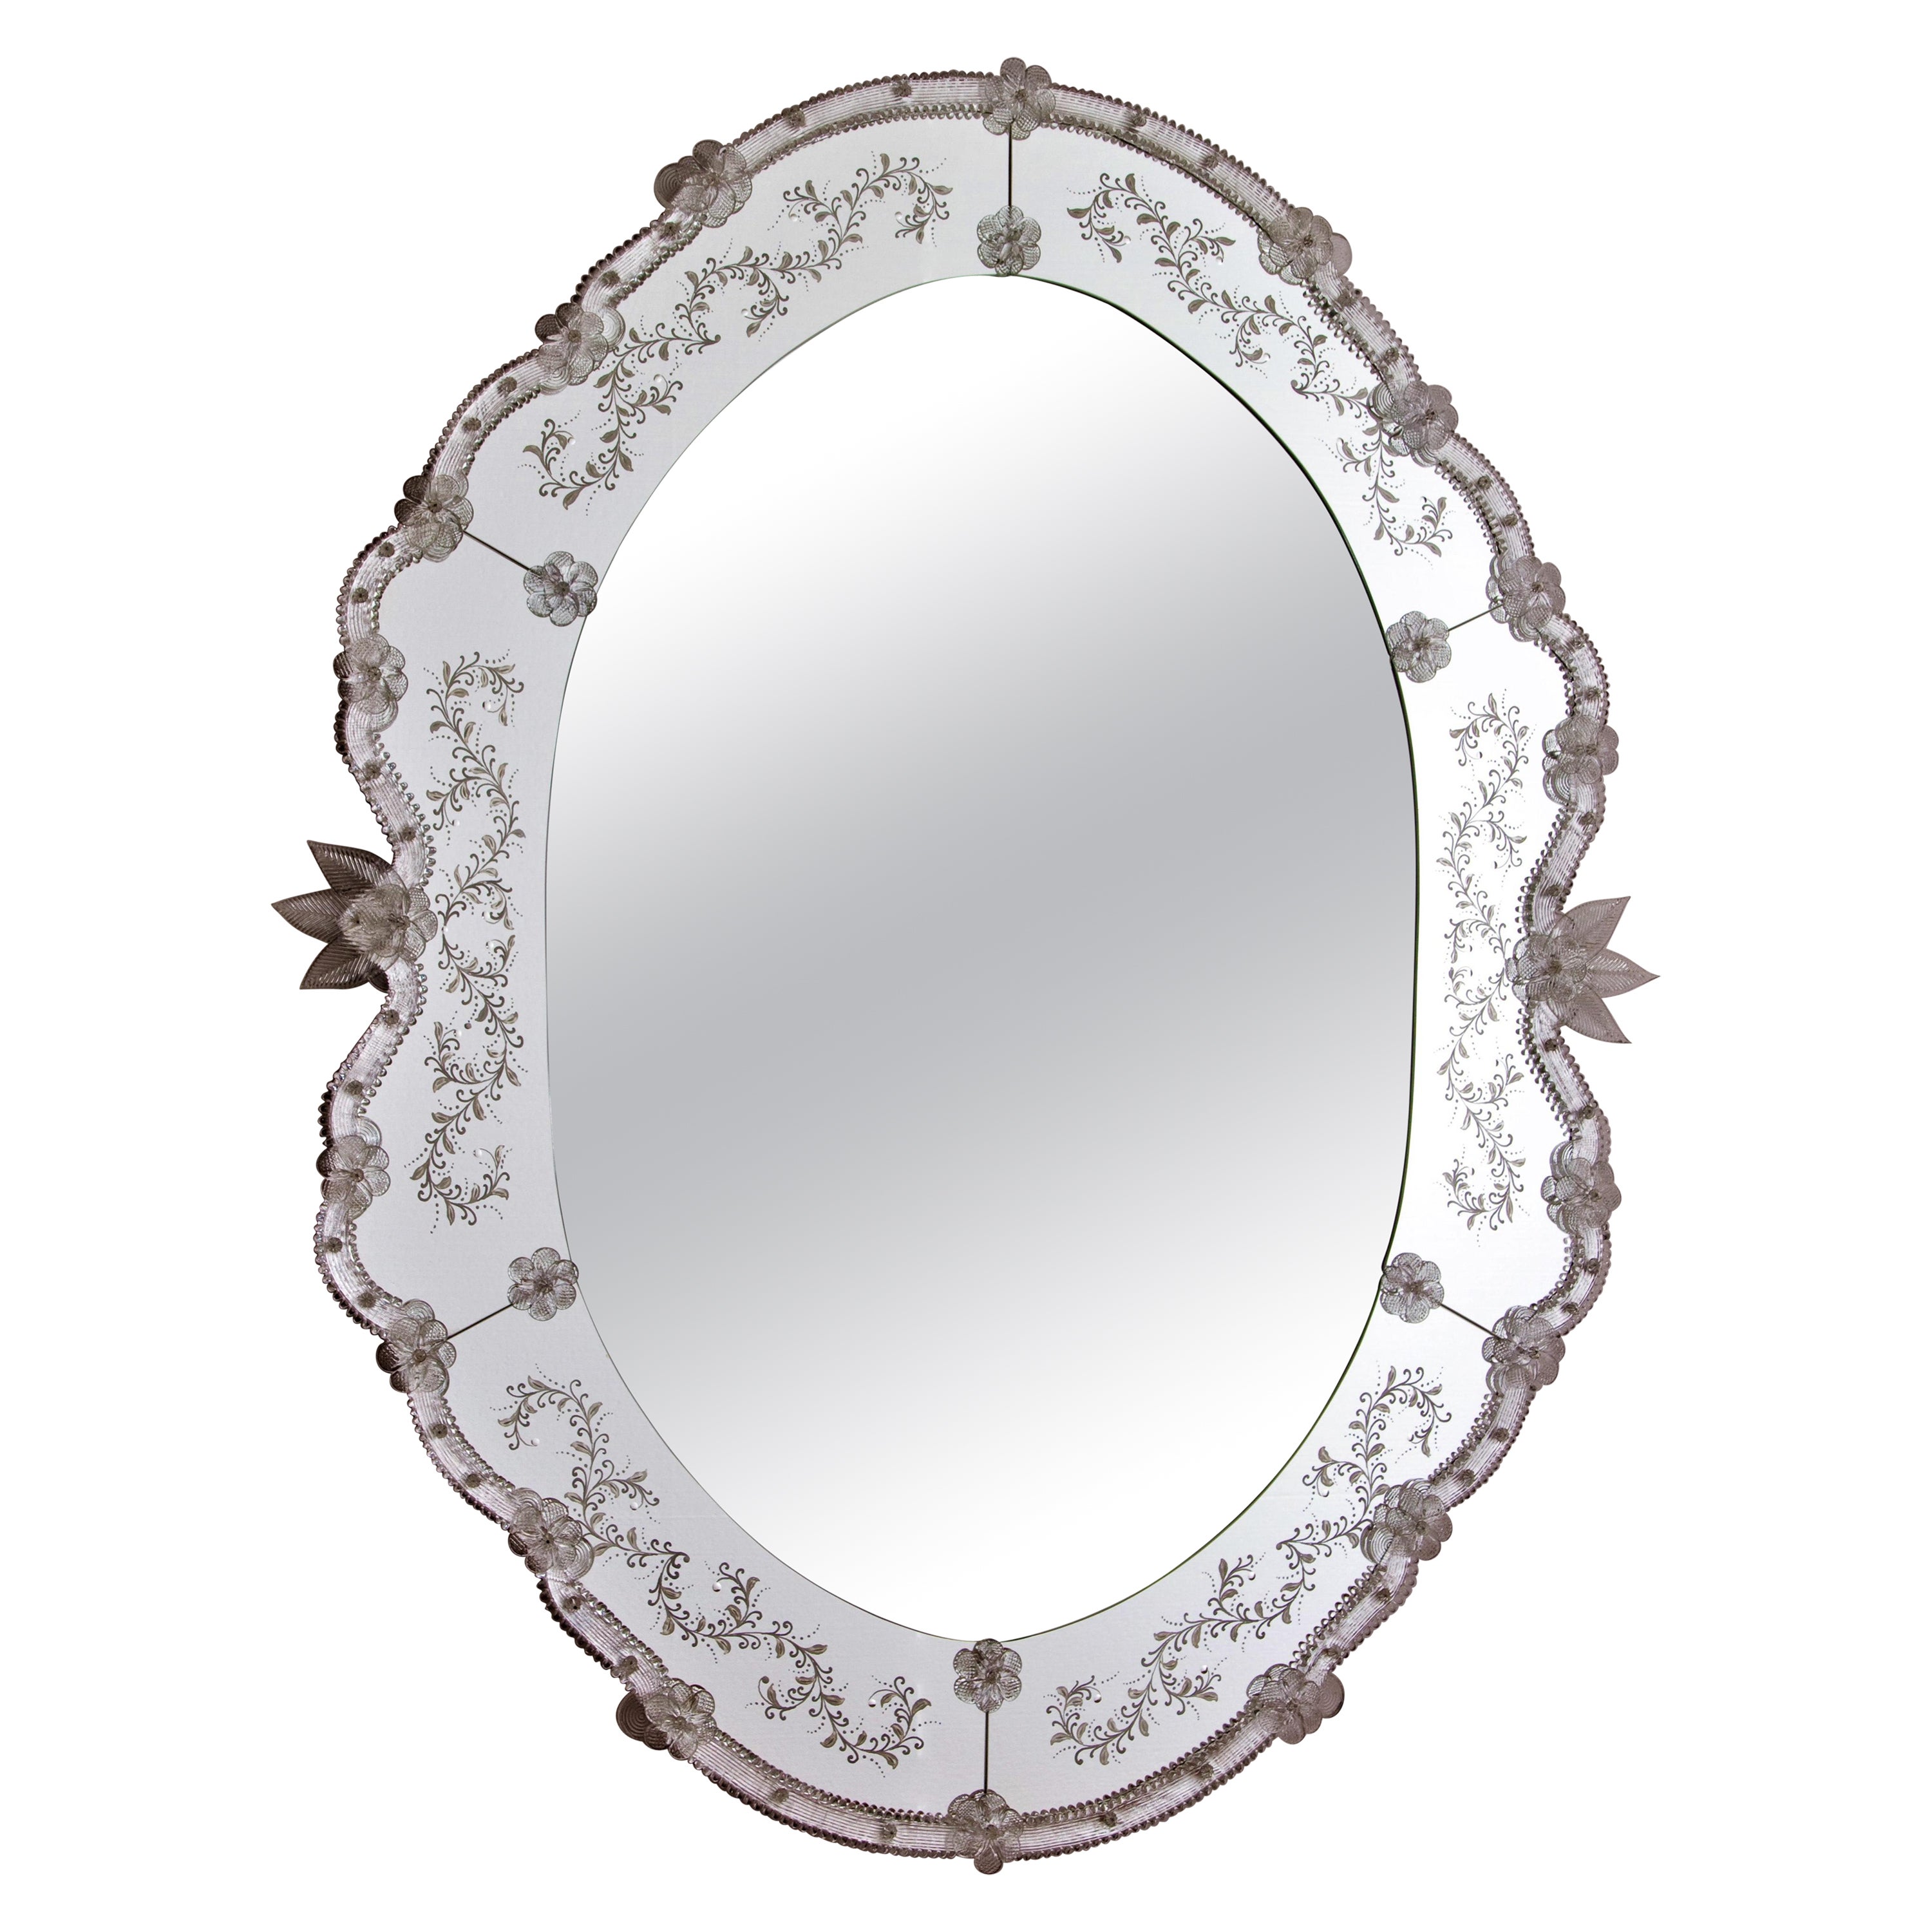 Muranoglas-Spiegel „Venezia“ im venezianischen Stil von Fratelli Tosi, hergestellt in Italien